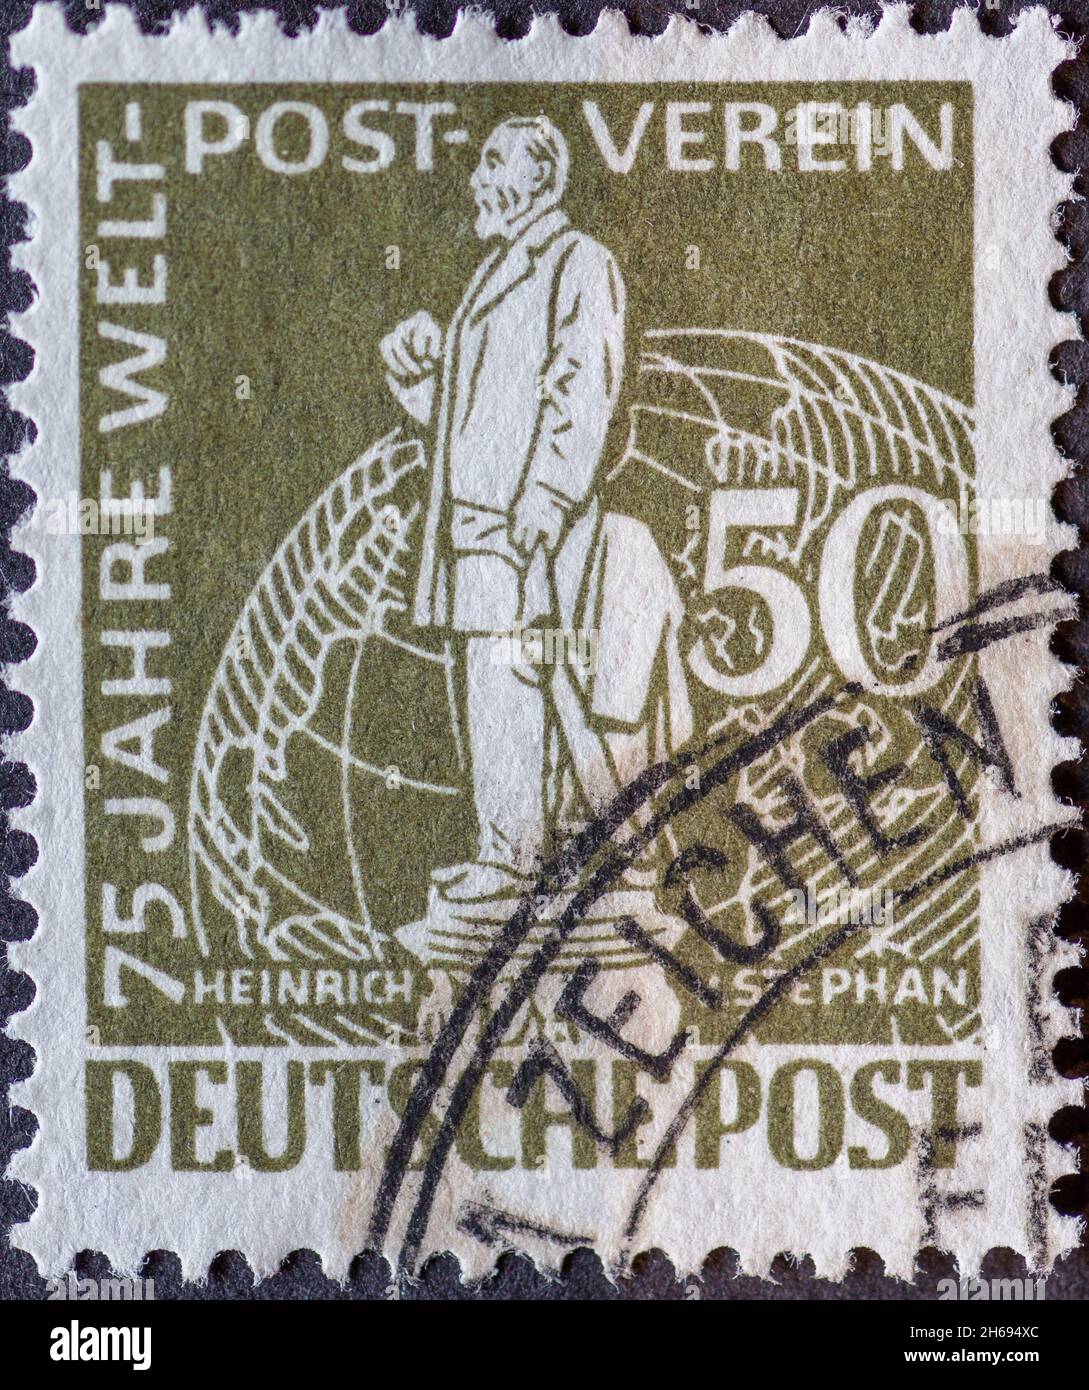 GERMANIA, Berlino - CIRCA 1949: Un francobollo dalla Germania, Berlino in verde oliva mostra il Postmaster Heinrich von Stephan testo: 75 anni di Foto Stock